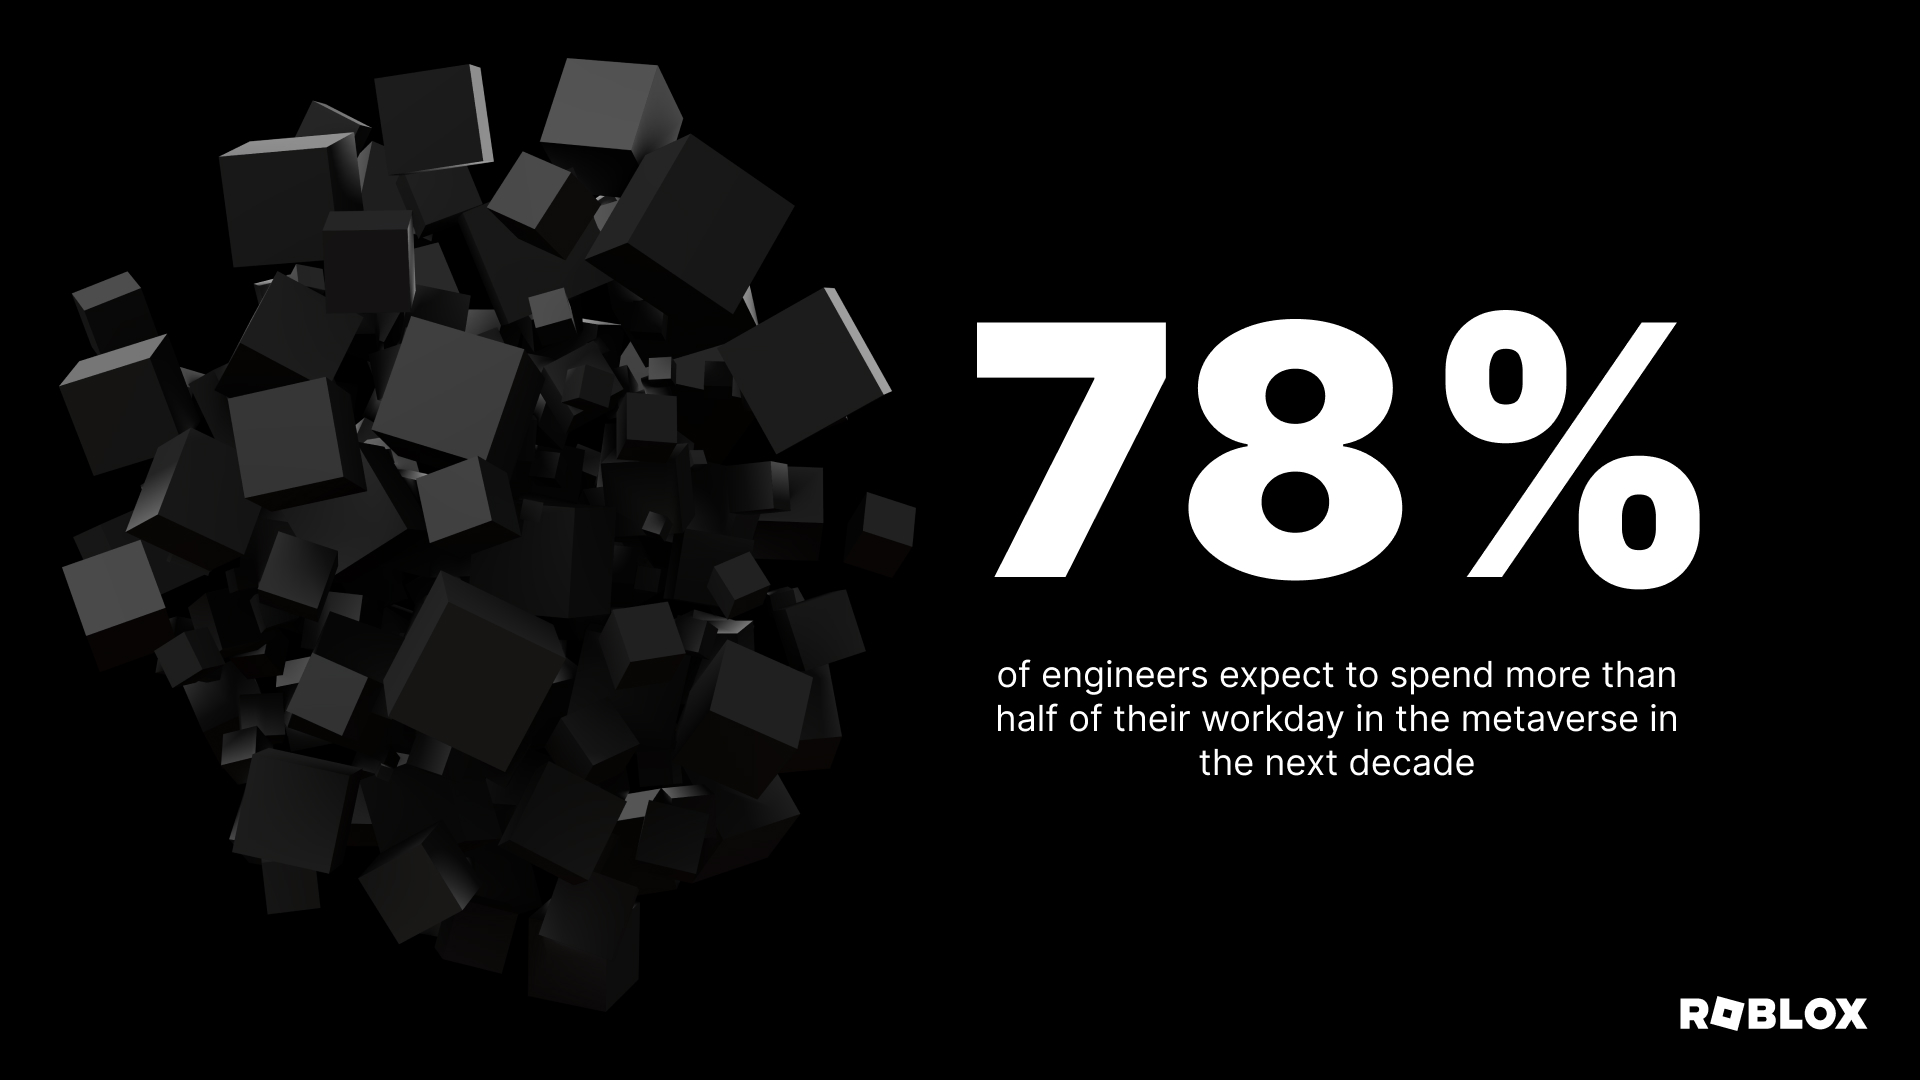 엔지니어의 78%는 향후 10년 동안 업무 시간의 절반 이상을 메타버스에서 보낼 것으로 예상합니다.